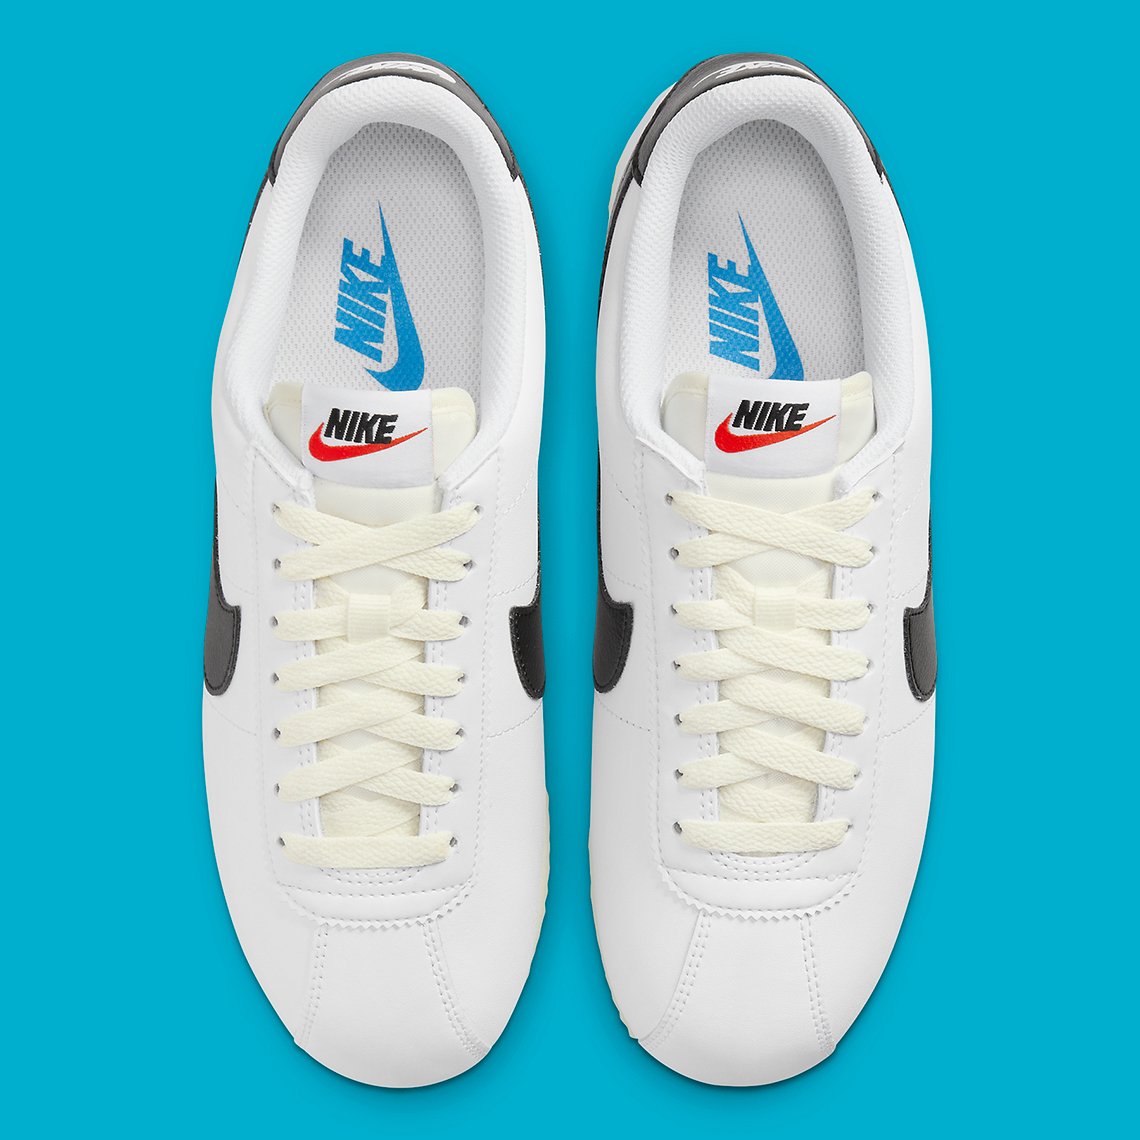 Ceniza función cortar a tajos Nike Cortez "White/Black/Light Photo Blue" DN1791-100 | SneakerNews.com